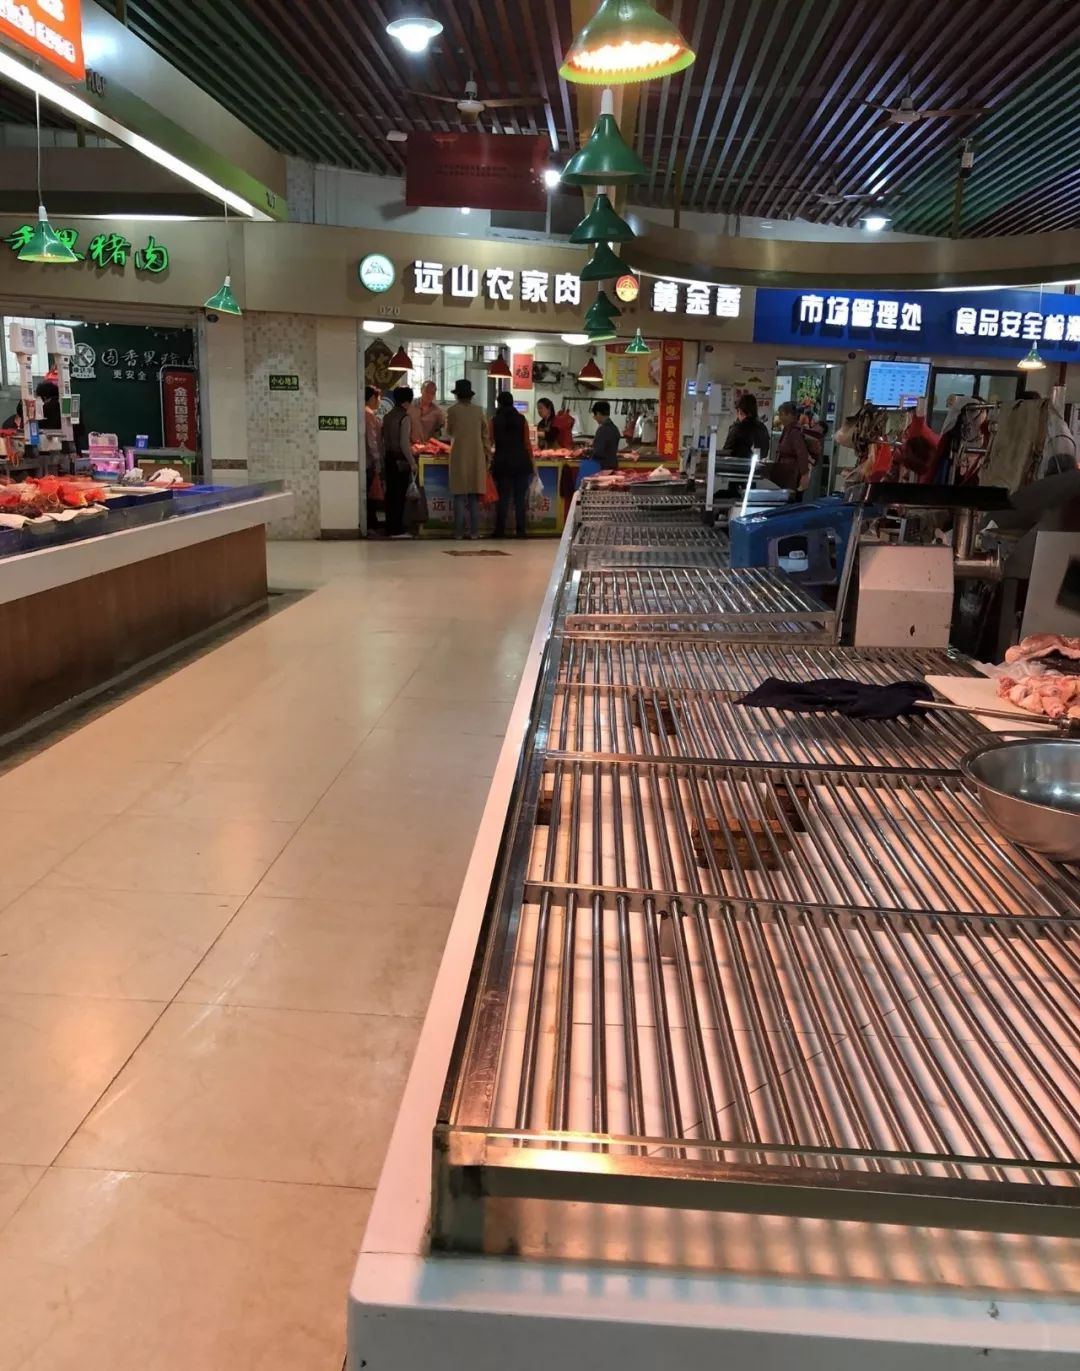 早上一进菜市场买菜 昨天(1227) 不少 厦门食肉动物 面对市场 